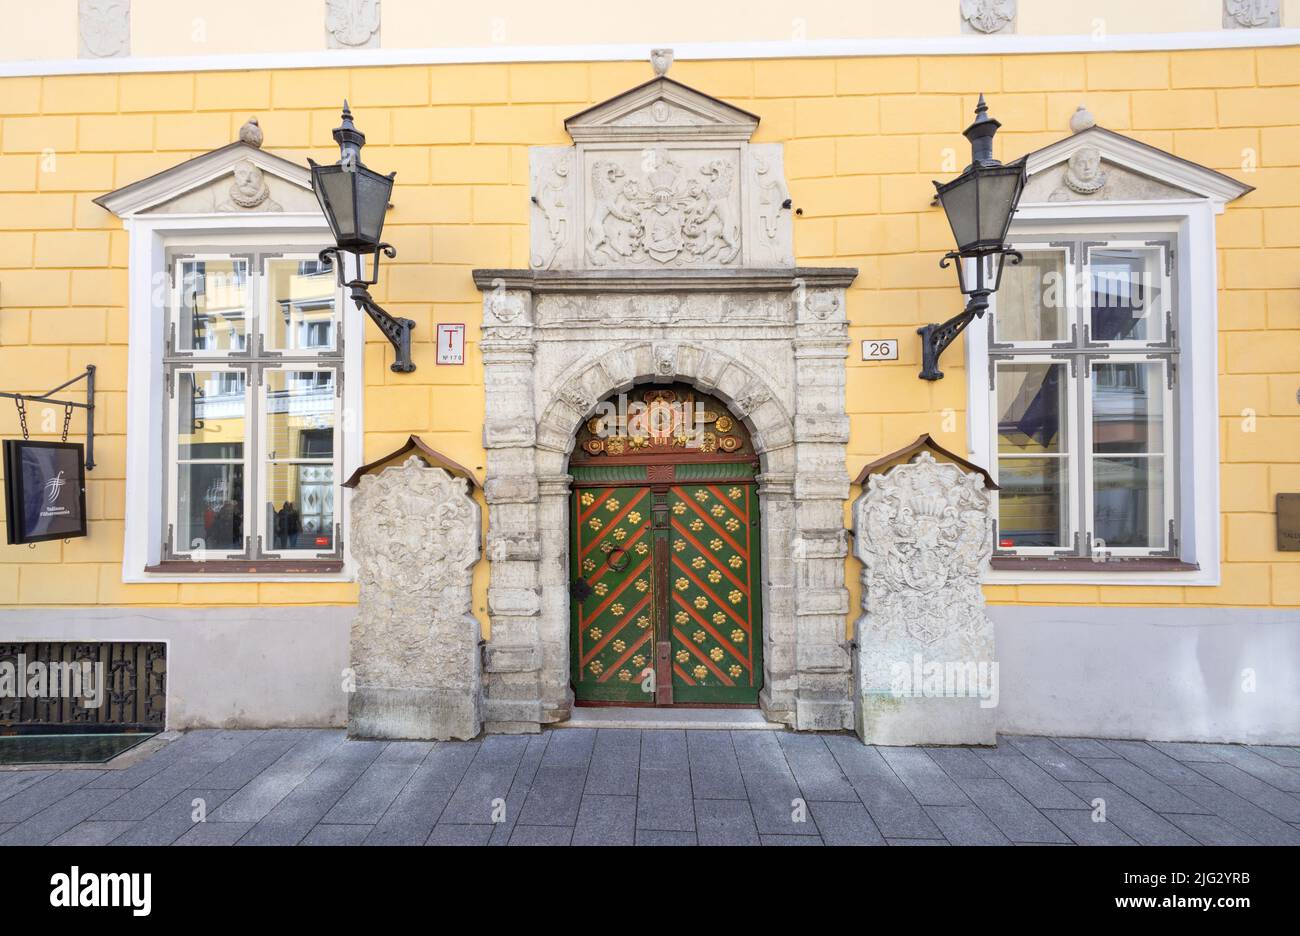 La Maison de la Confrérie des Blackheads, anciennement marchands puissants, dans la vieille ville de Tallinn, Tallinn Estonie Banque D'Images